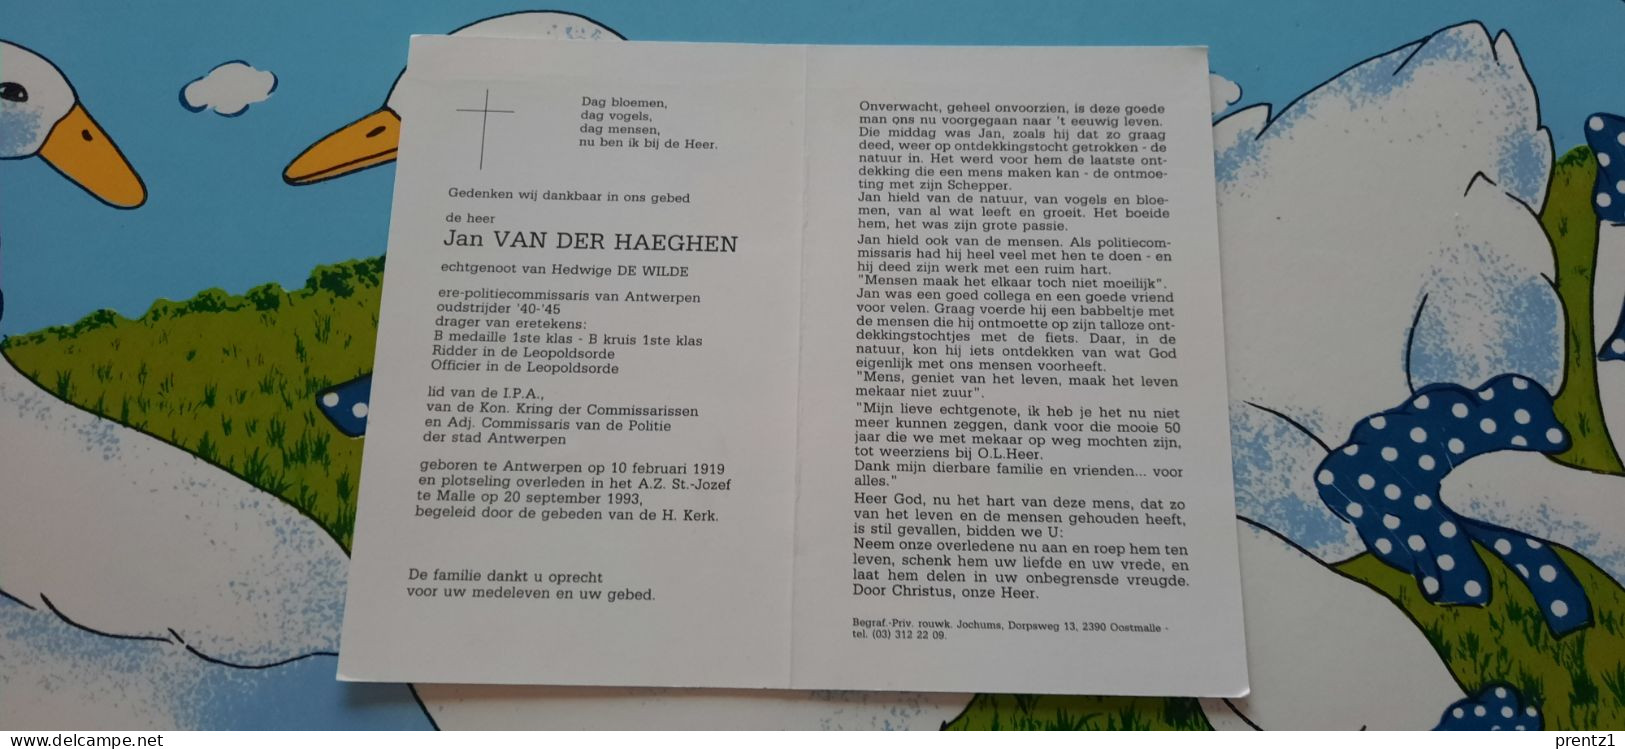 Jan Van Der Haeghen Geb.Antwerpen 10/02/1919- Getr.H. De Wilde - Politie Commissaris-Oudstrijder- Gest. Malle 20/09/1993 - Devotion Images